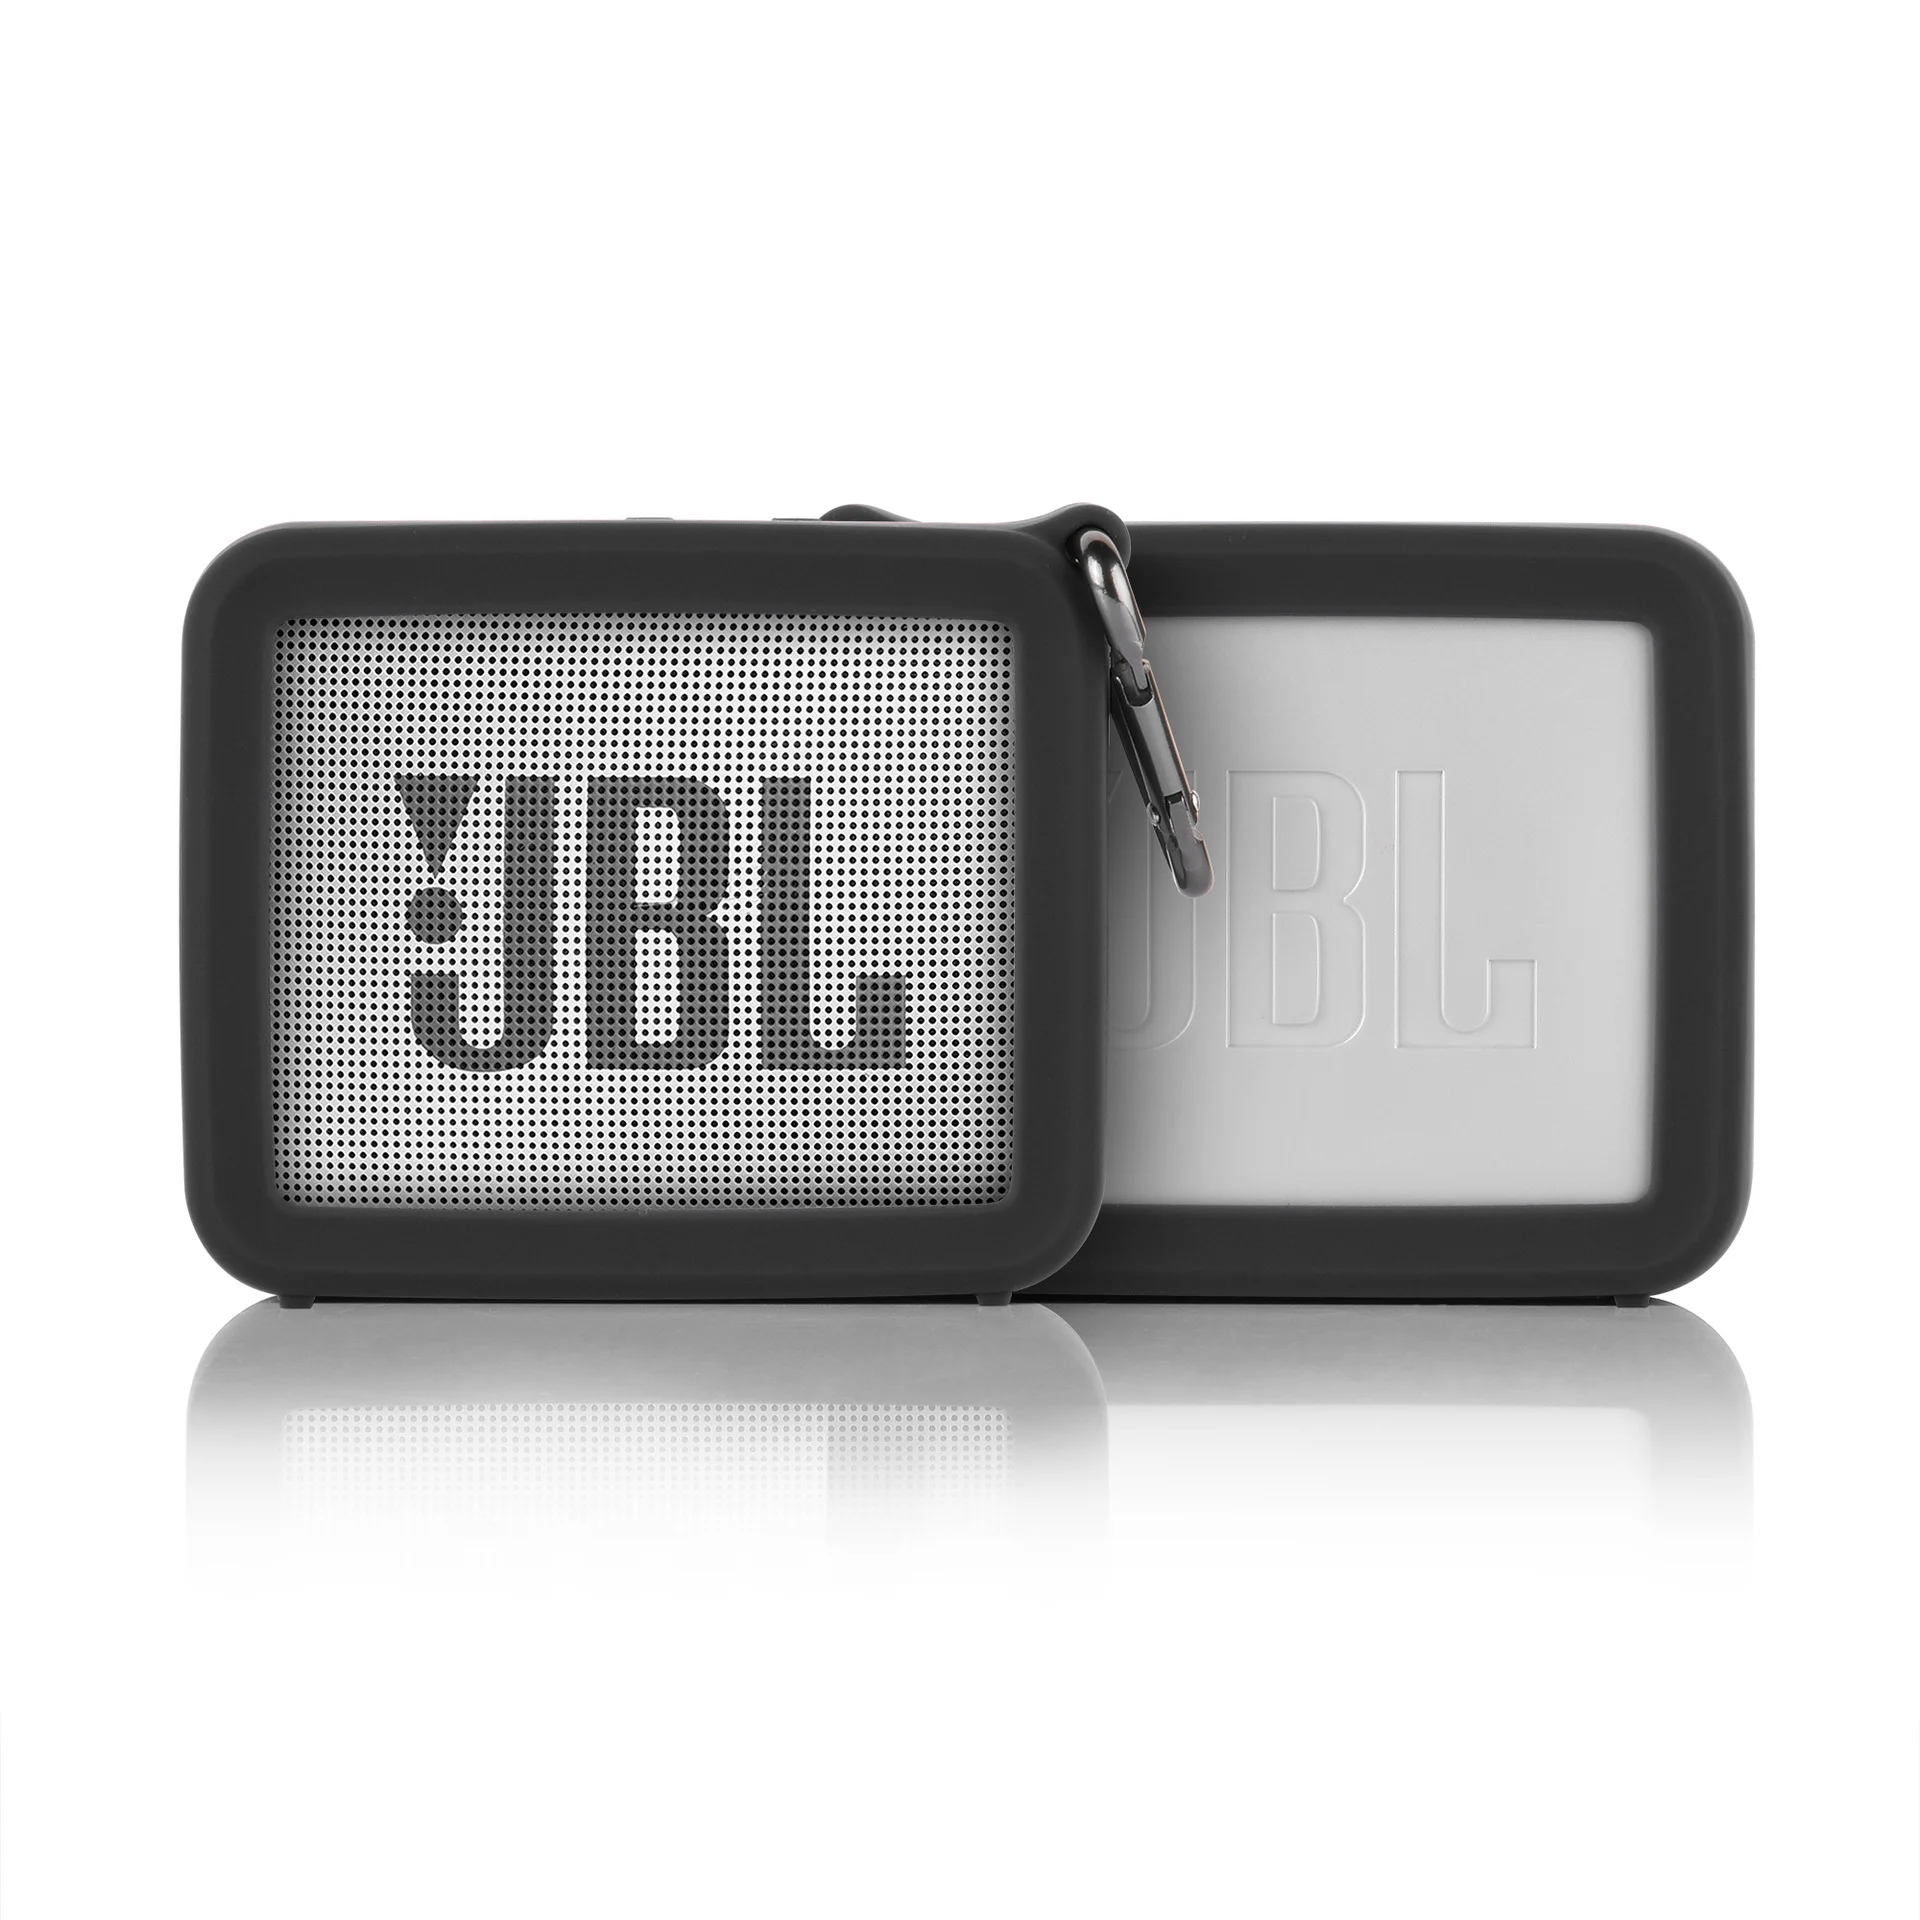 Чехол для JBLGO 2 чехол Jbl Go2 оригинальный портативный силиконовый динамика мягкий